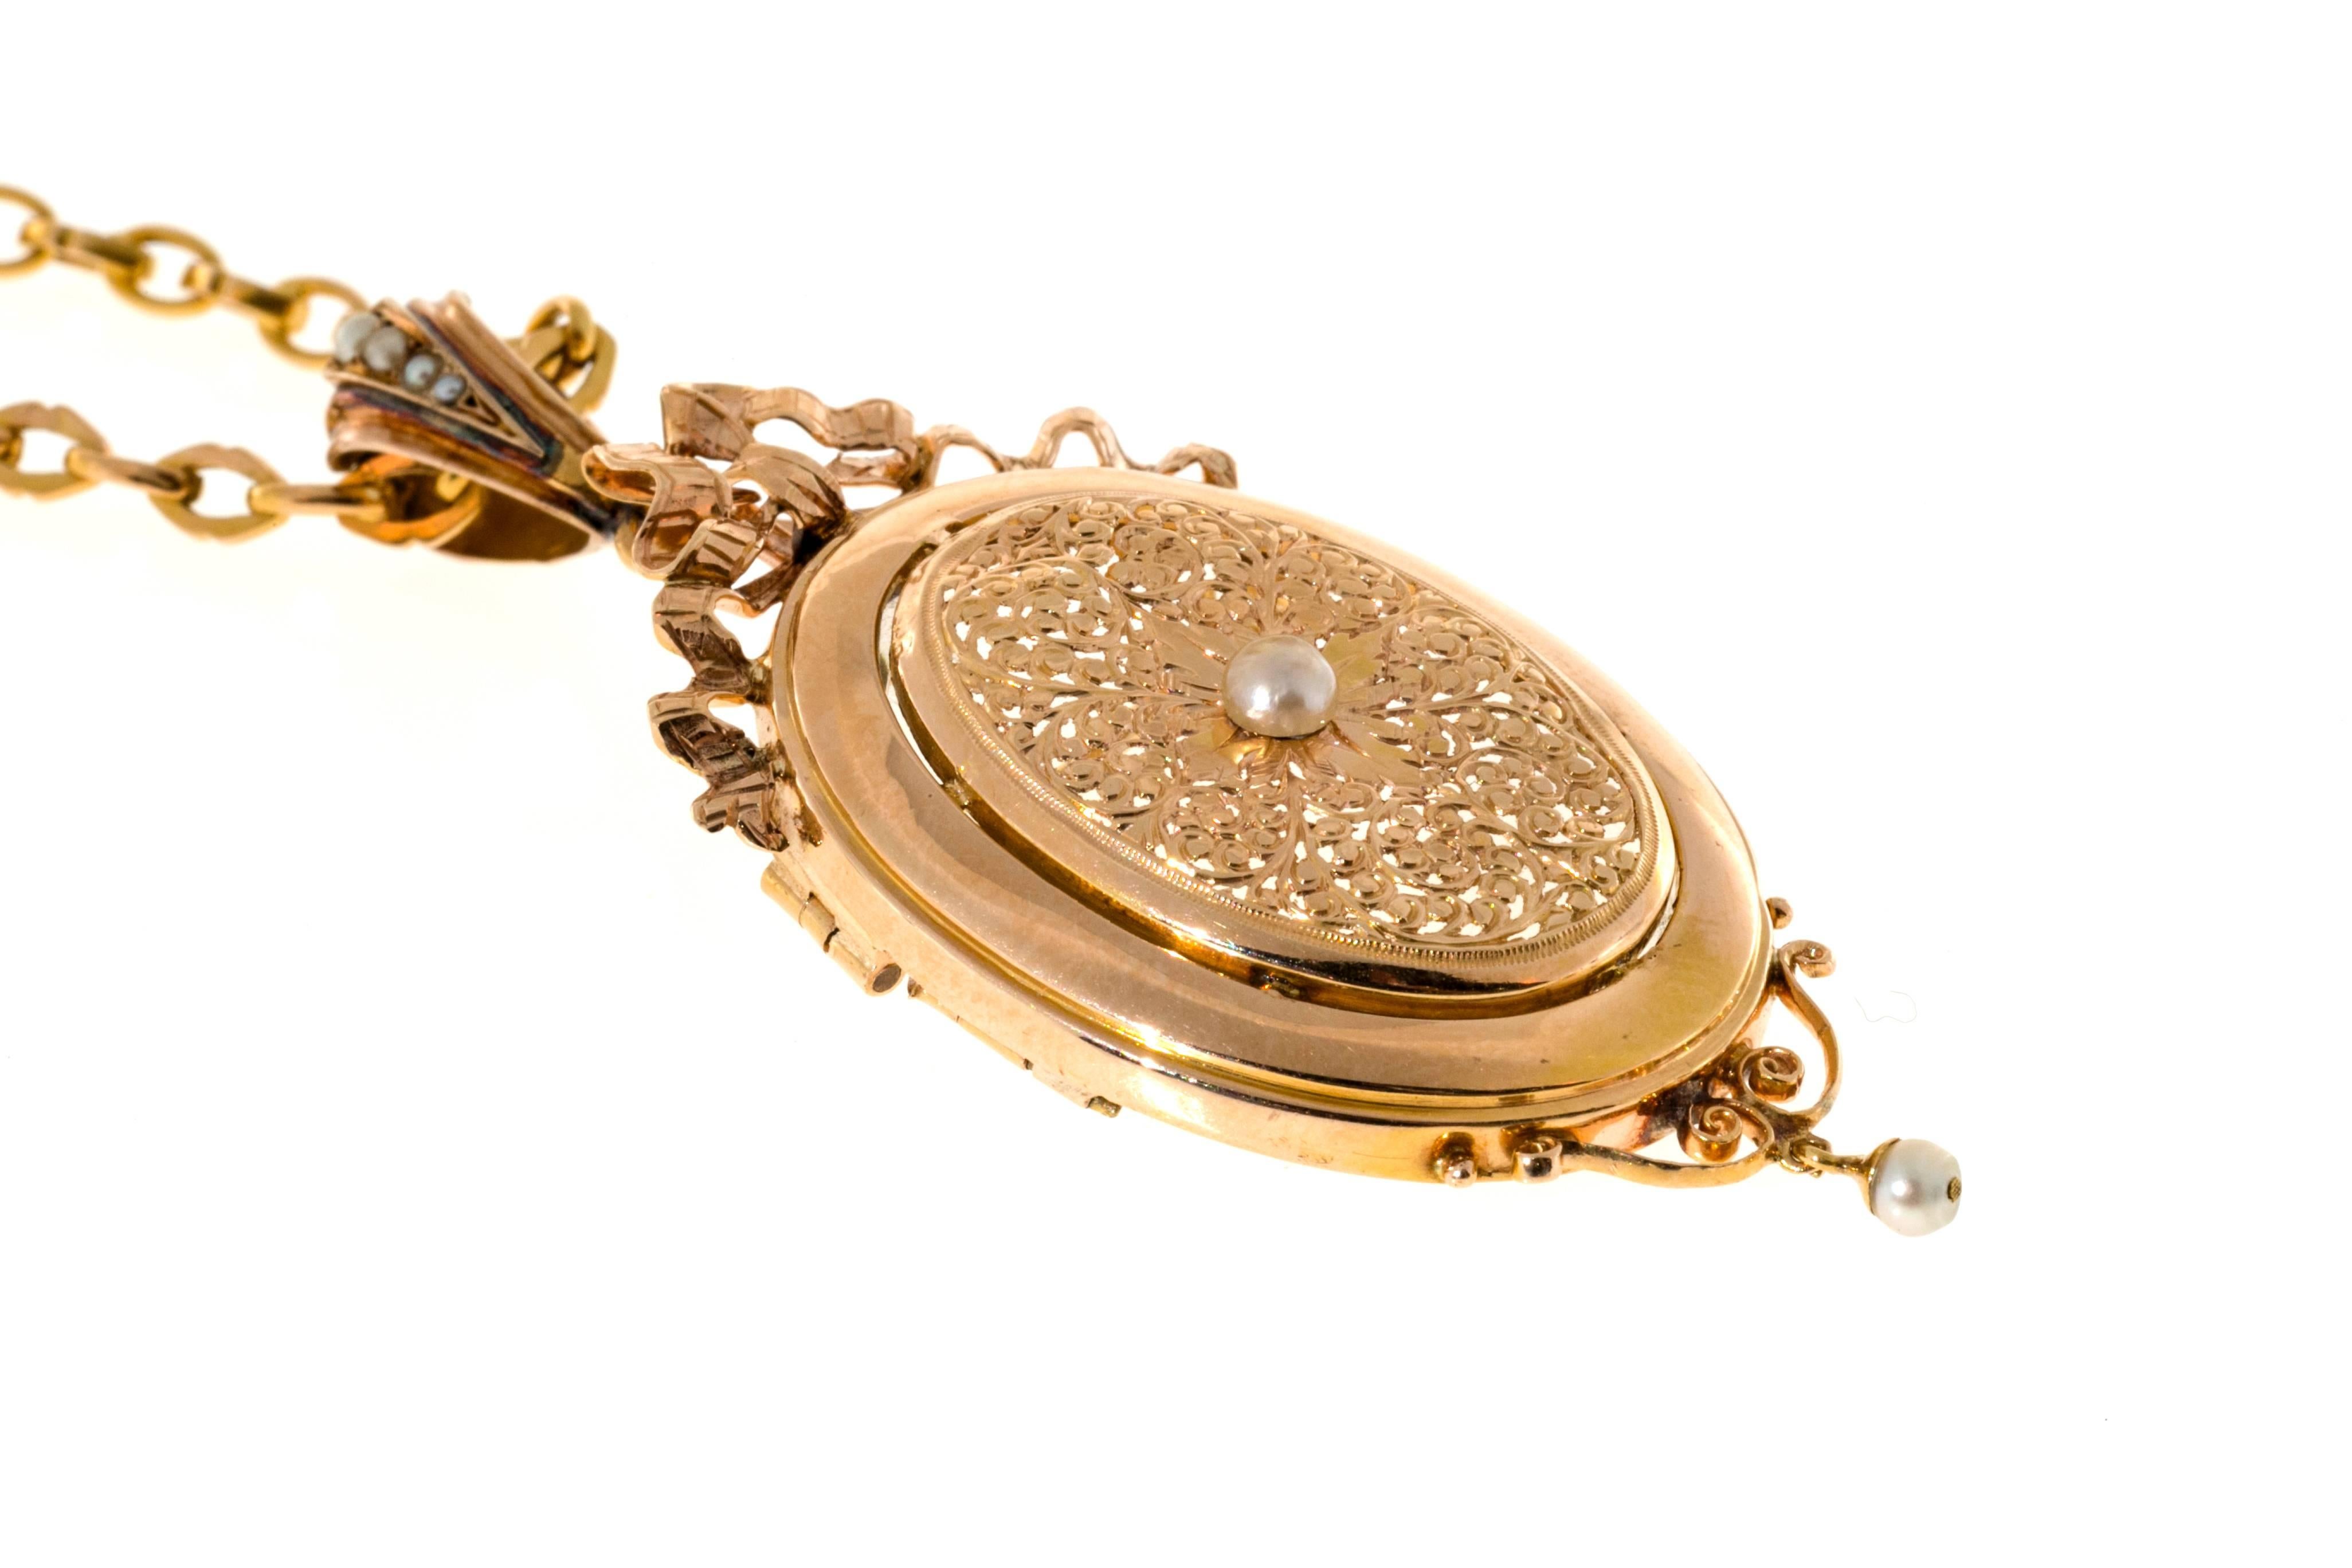 Collier à épingles et médaillon en or rose et perles naturelles, fait à la main, avec une chaîne originale faite à la main. L'anneau et la chaîne sont amovibles pour être portés comme une broche.  Le dos s'ouvre pour accueillir une photo. Vers